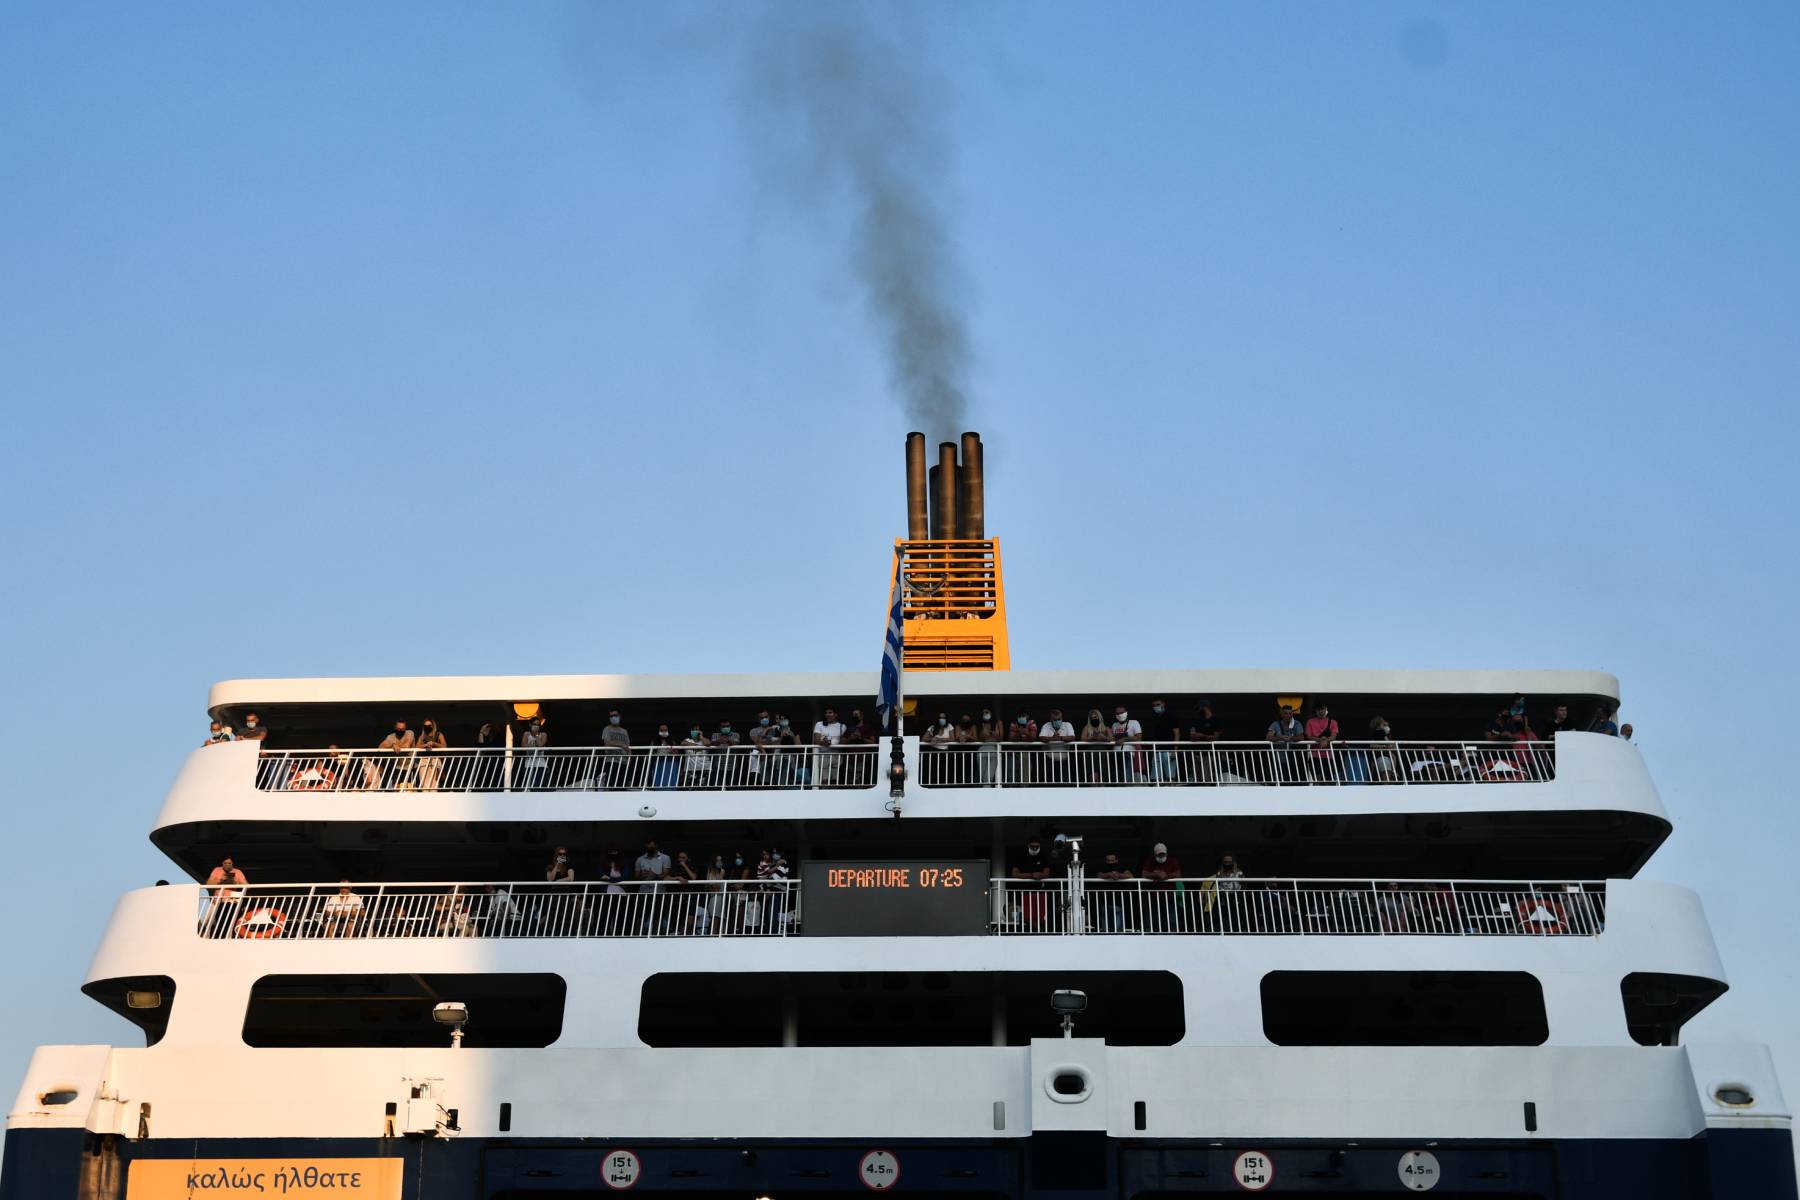 Πλοίο βλάβη- Λαύριο: Πρόβλημα στην μηχανή του Aqua Star που μεταφέρει 375 επιβάτες